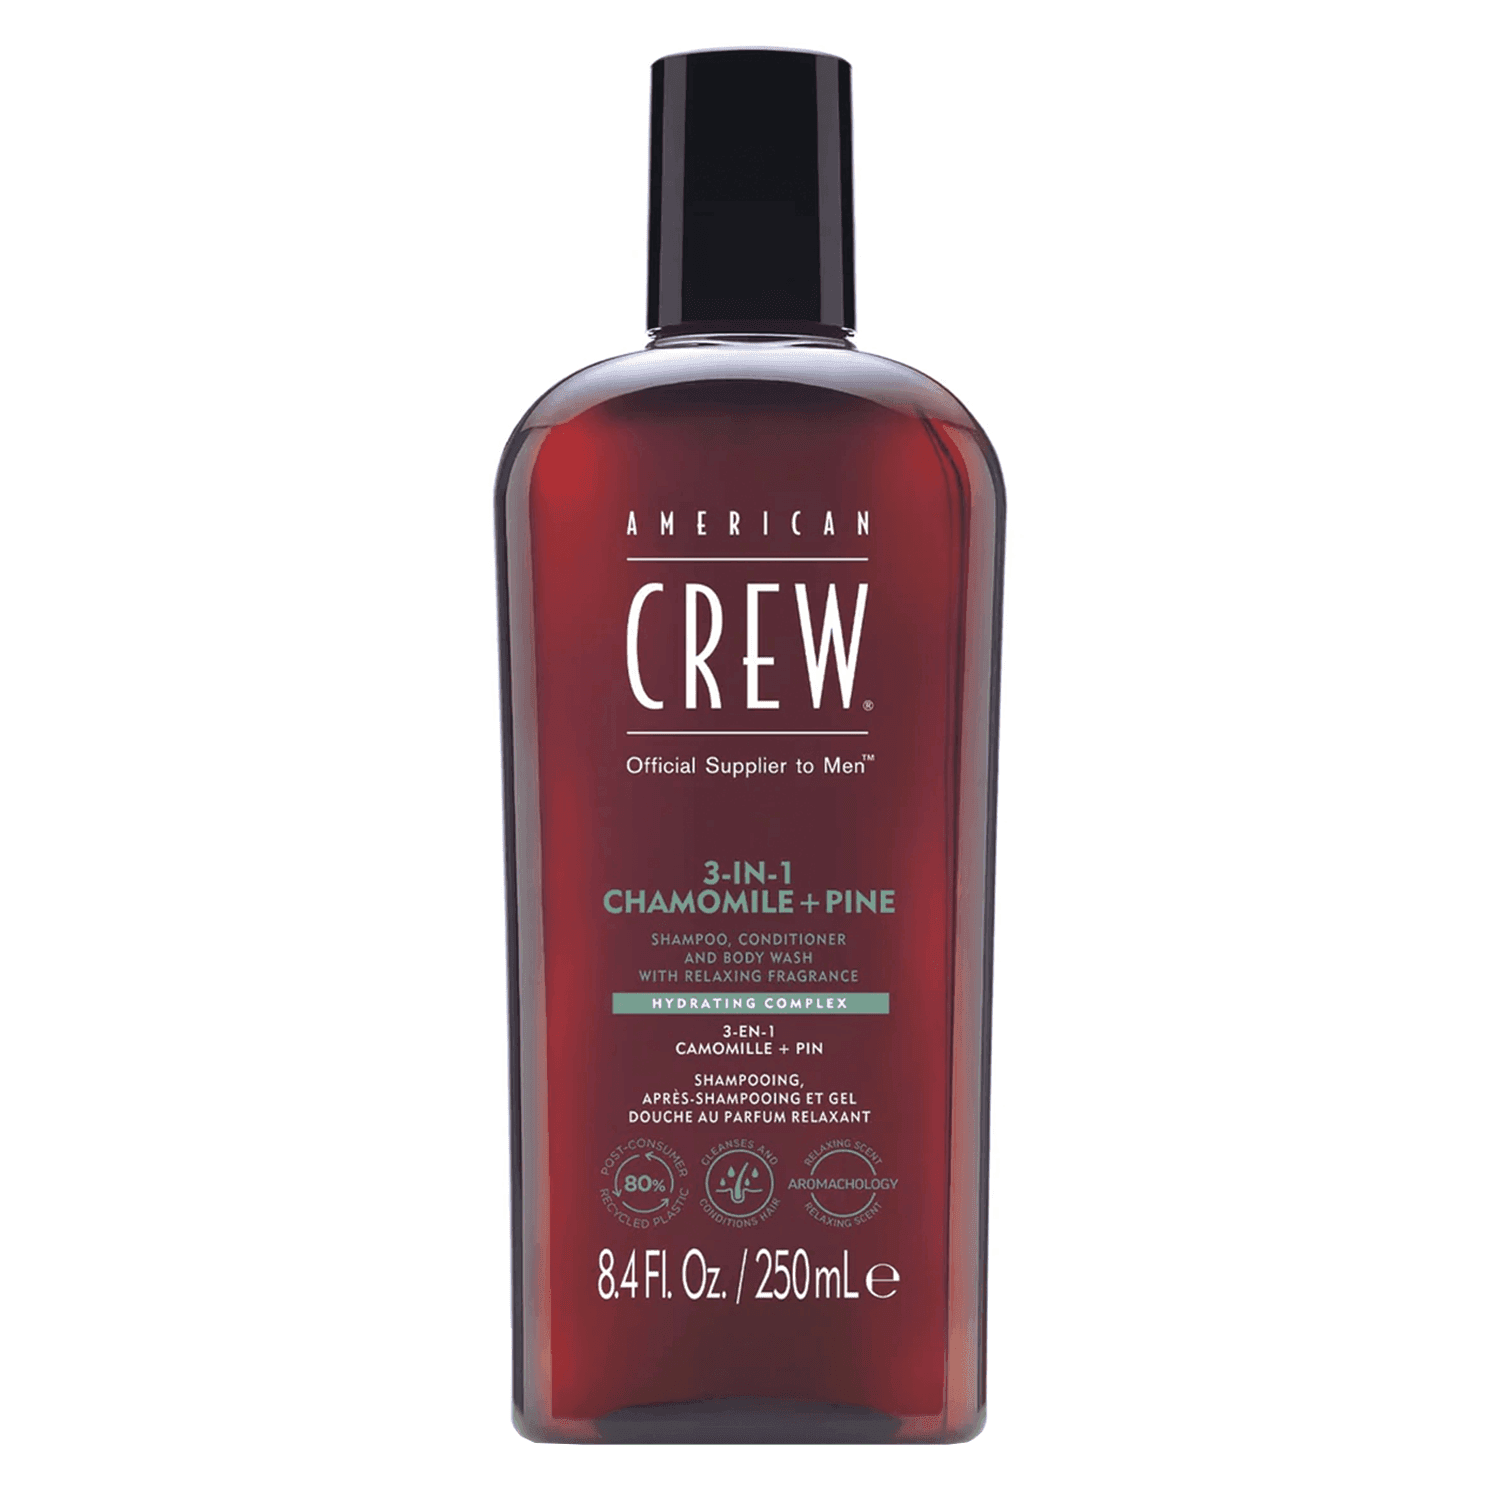 Crew Hair & Body Care - American Crew 3-in-1 Chamomile & Pine Shampoo, Conditioner & Body Wash